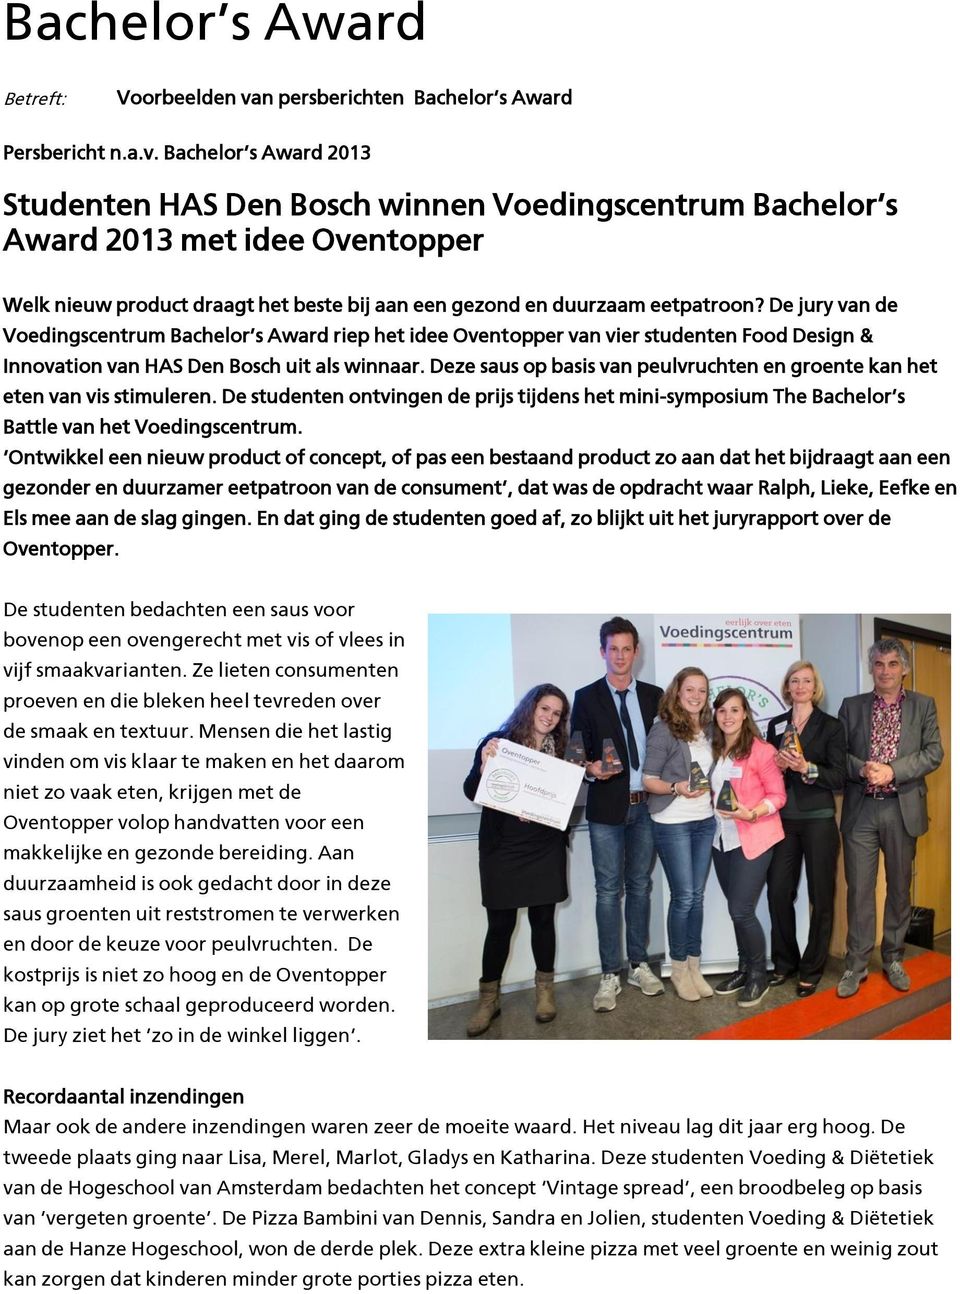 De jury van de Voedingscentrum Bachelor s Award riep het idee Oventopper van vier studenten Food Design & Innovation van HAS Den Bosch uit als winnaar.